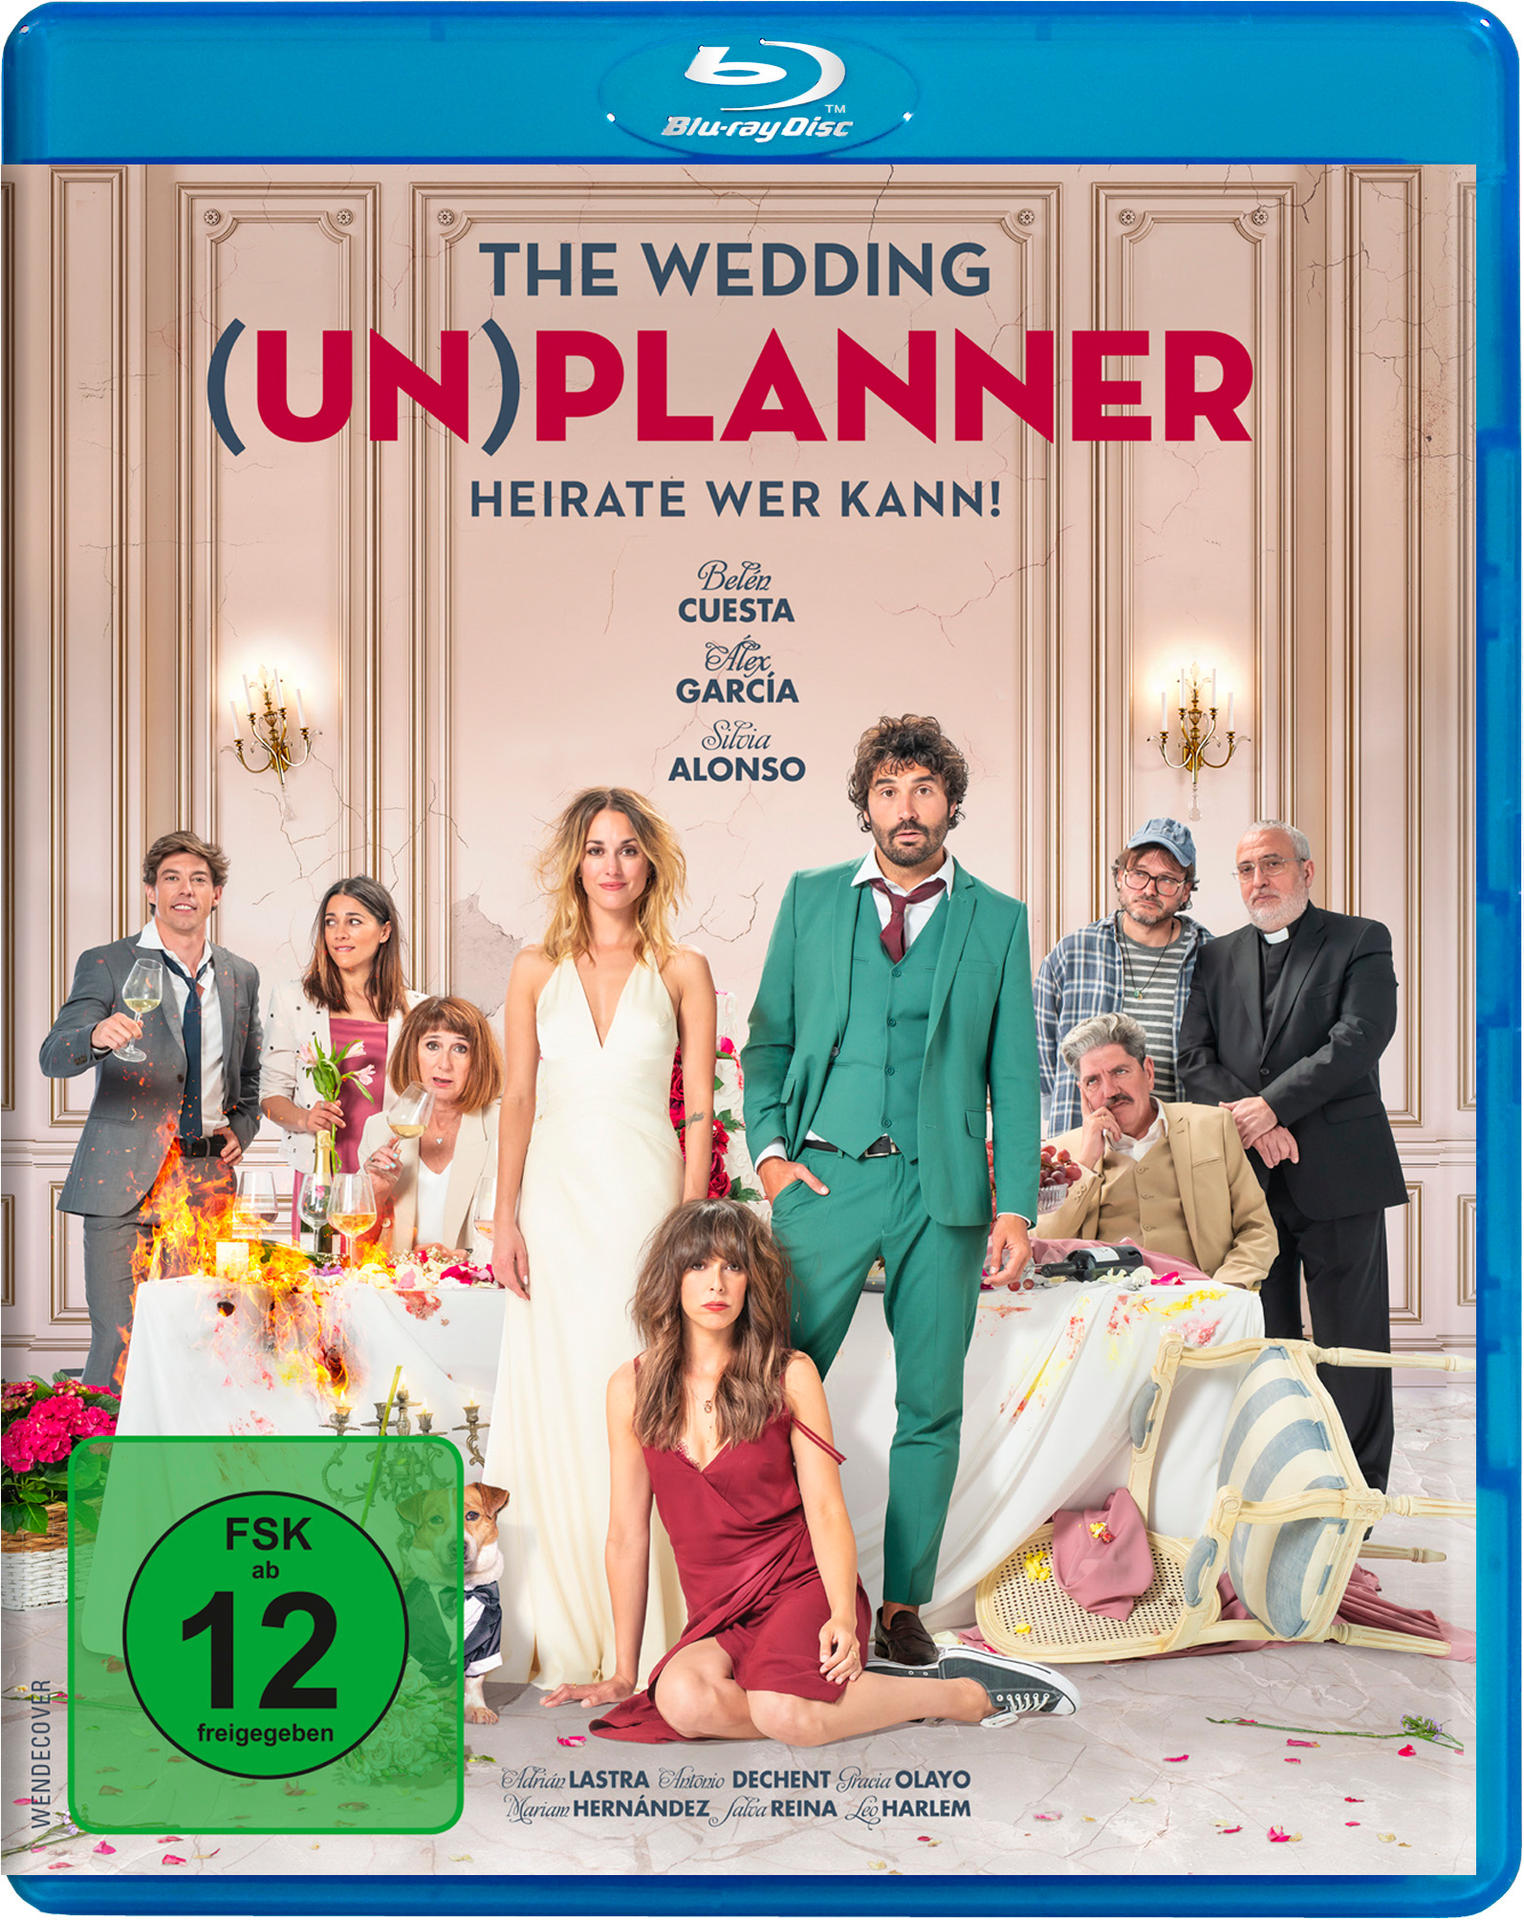 KANN! THE WEDDING WER Blu-ray (UN)PLANNER-HEIRATE